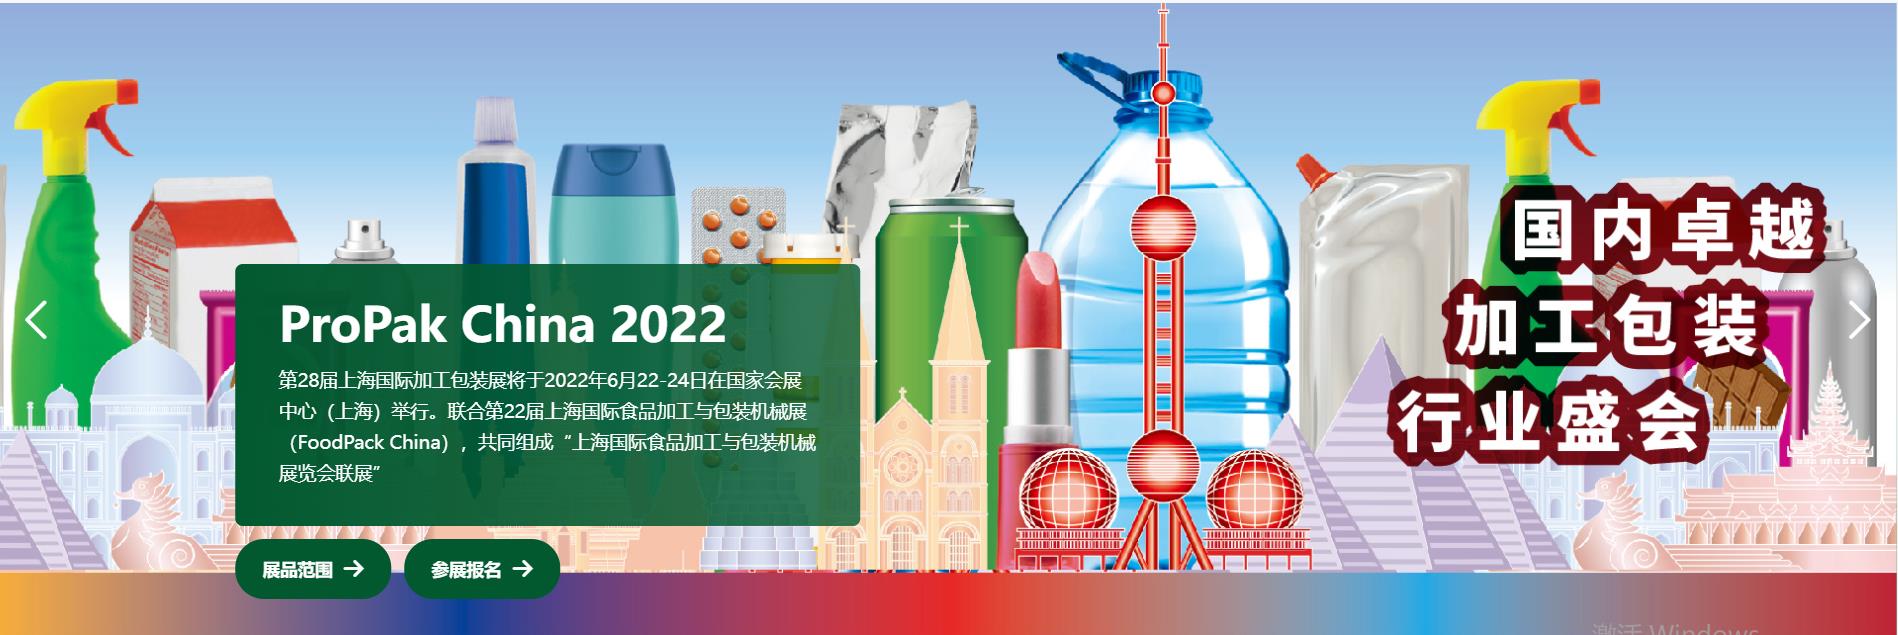 包装机械设备展会广州 propak 上海2022食品加工包装机械博览会